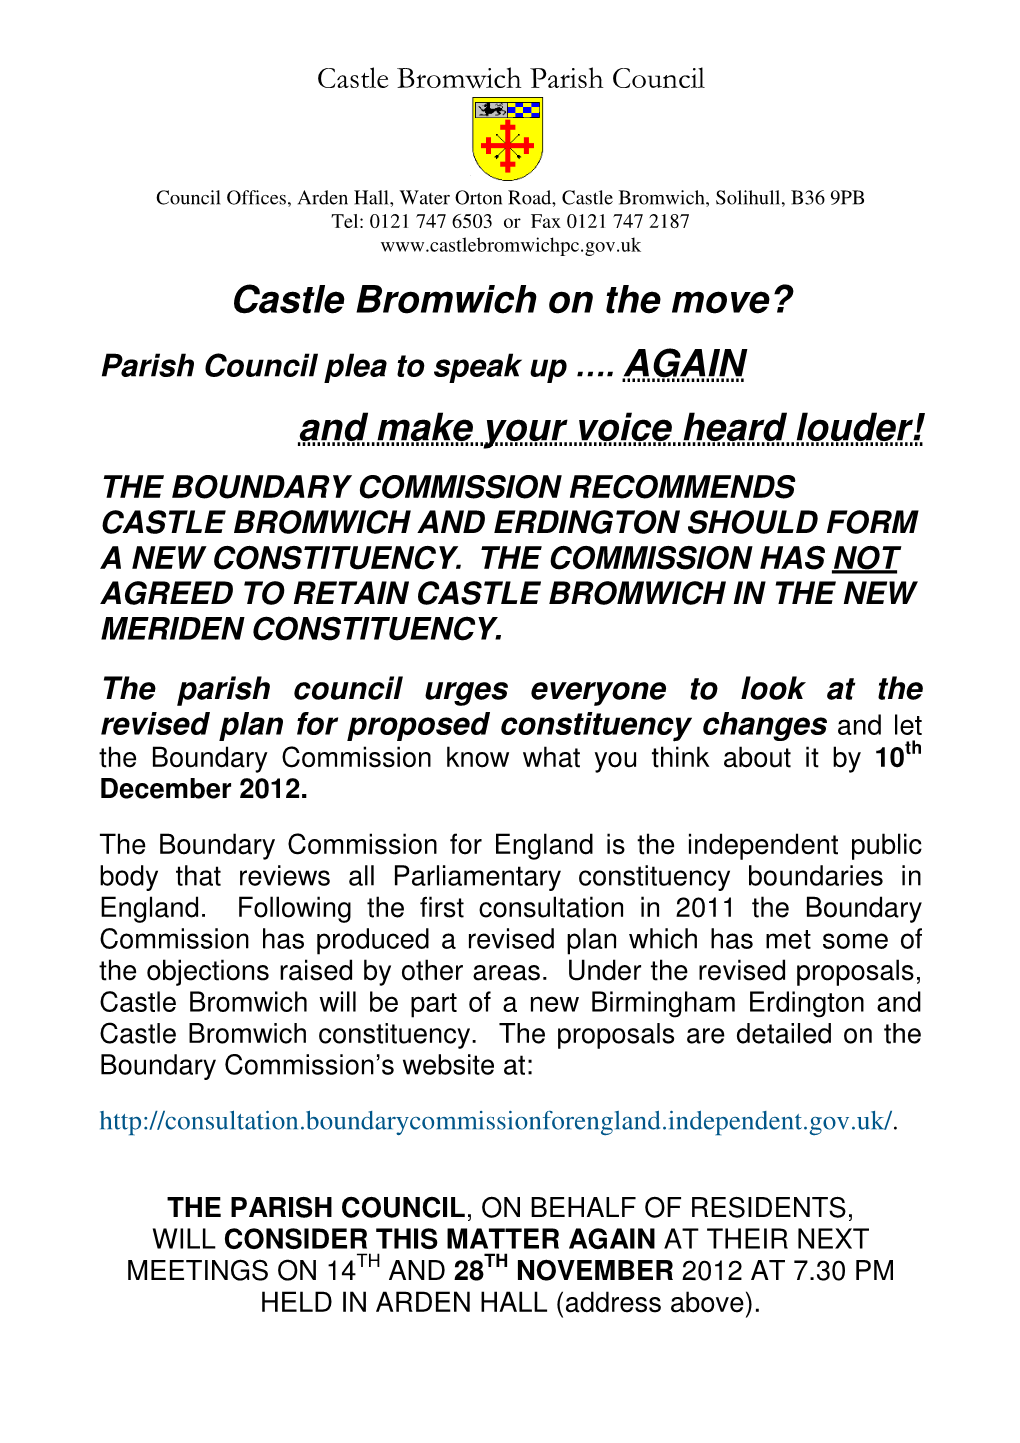 Castle Bromwich on the Move? Parish Council Plea to Speak up …